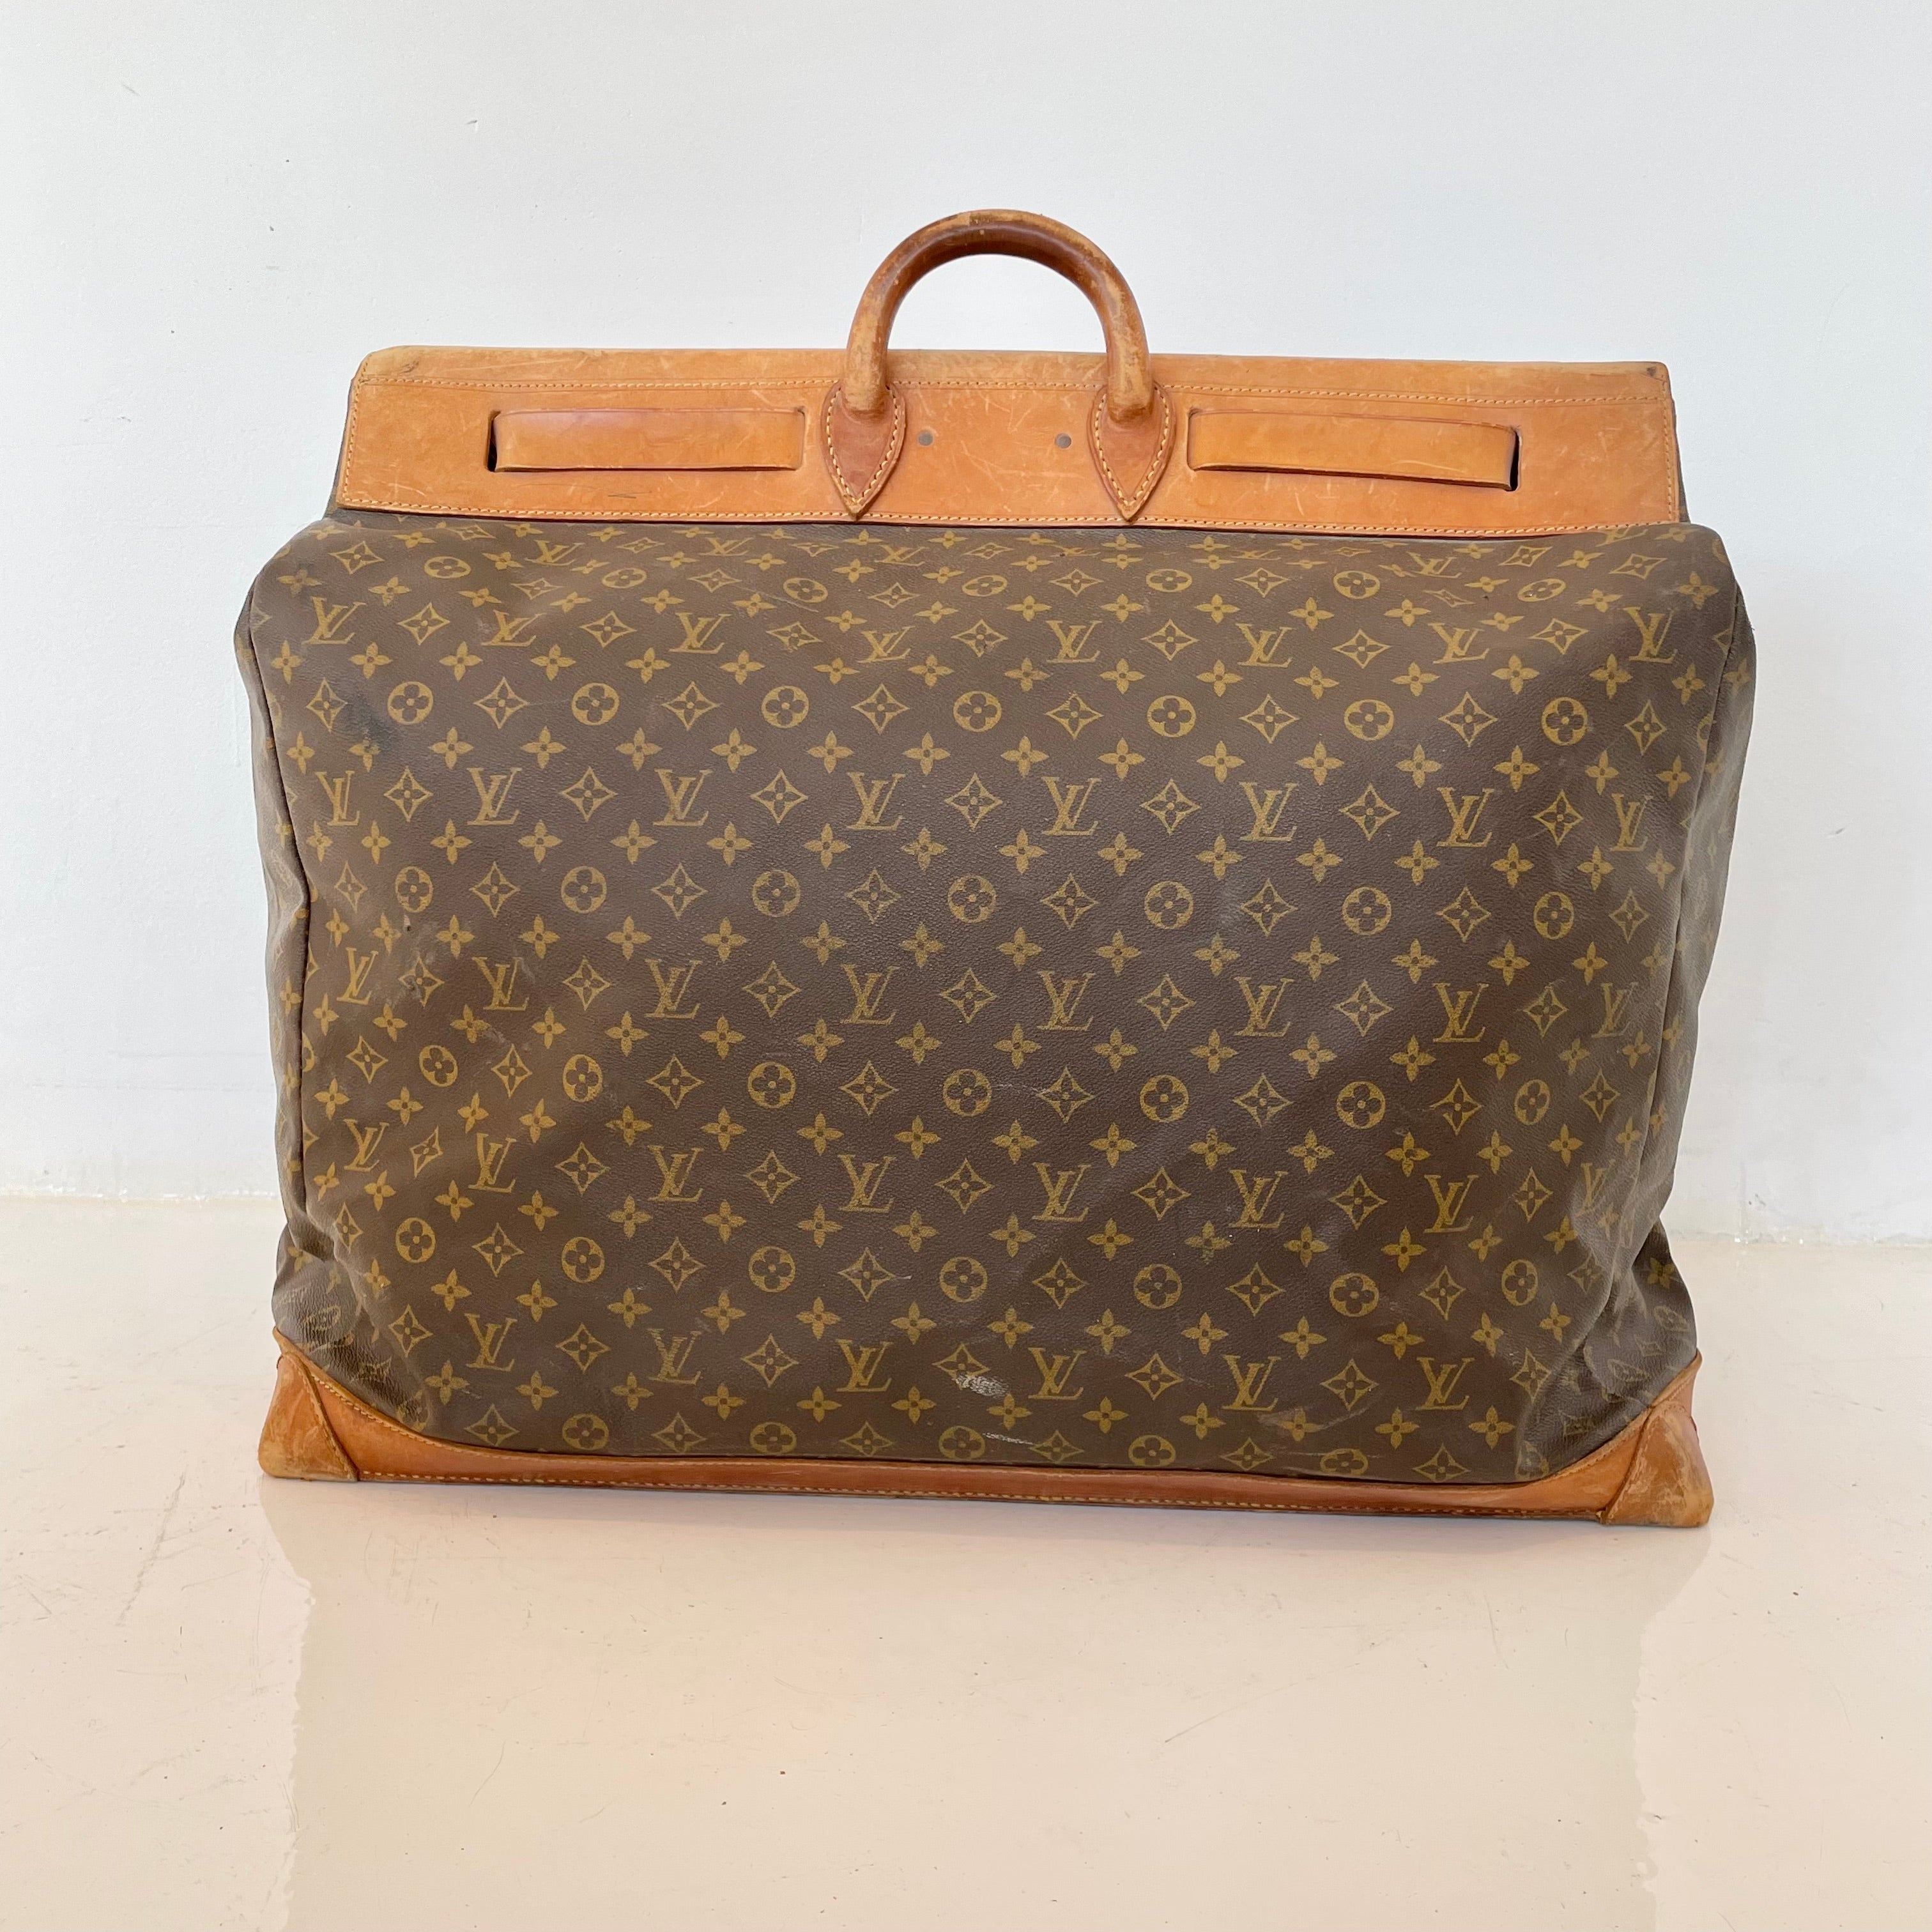 Vintage Louis Vuitton Duffle Bag - 1970's Large Louis Vuitton Travel Bag